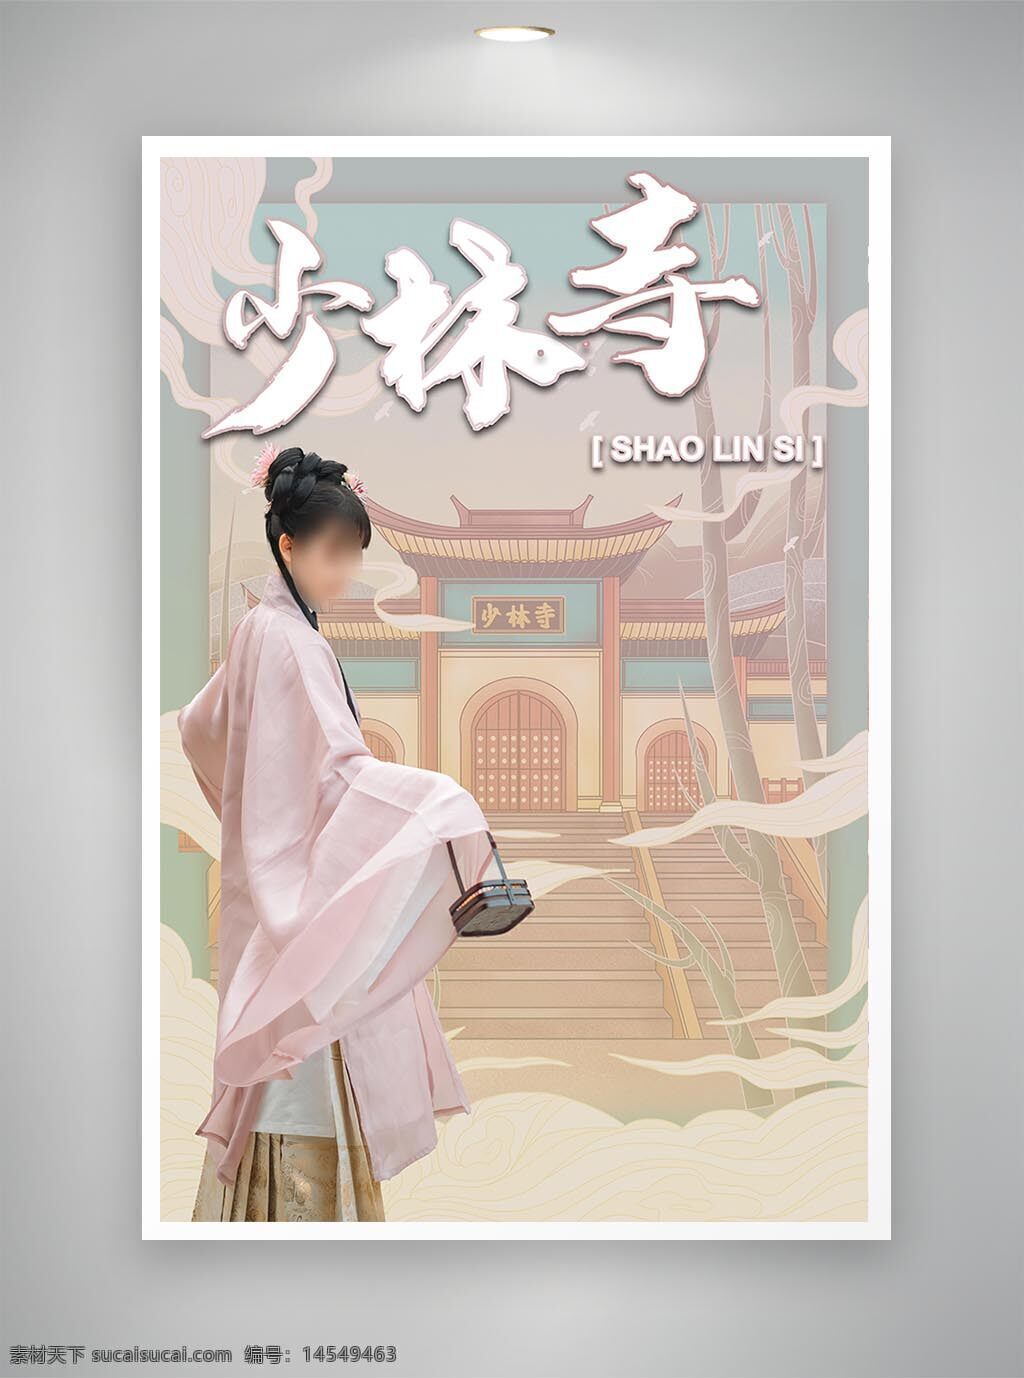 促销海报 中国风海报 古风海报 少林寺海报